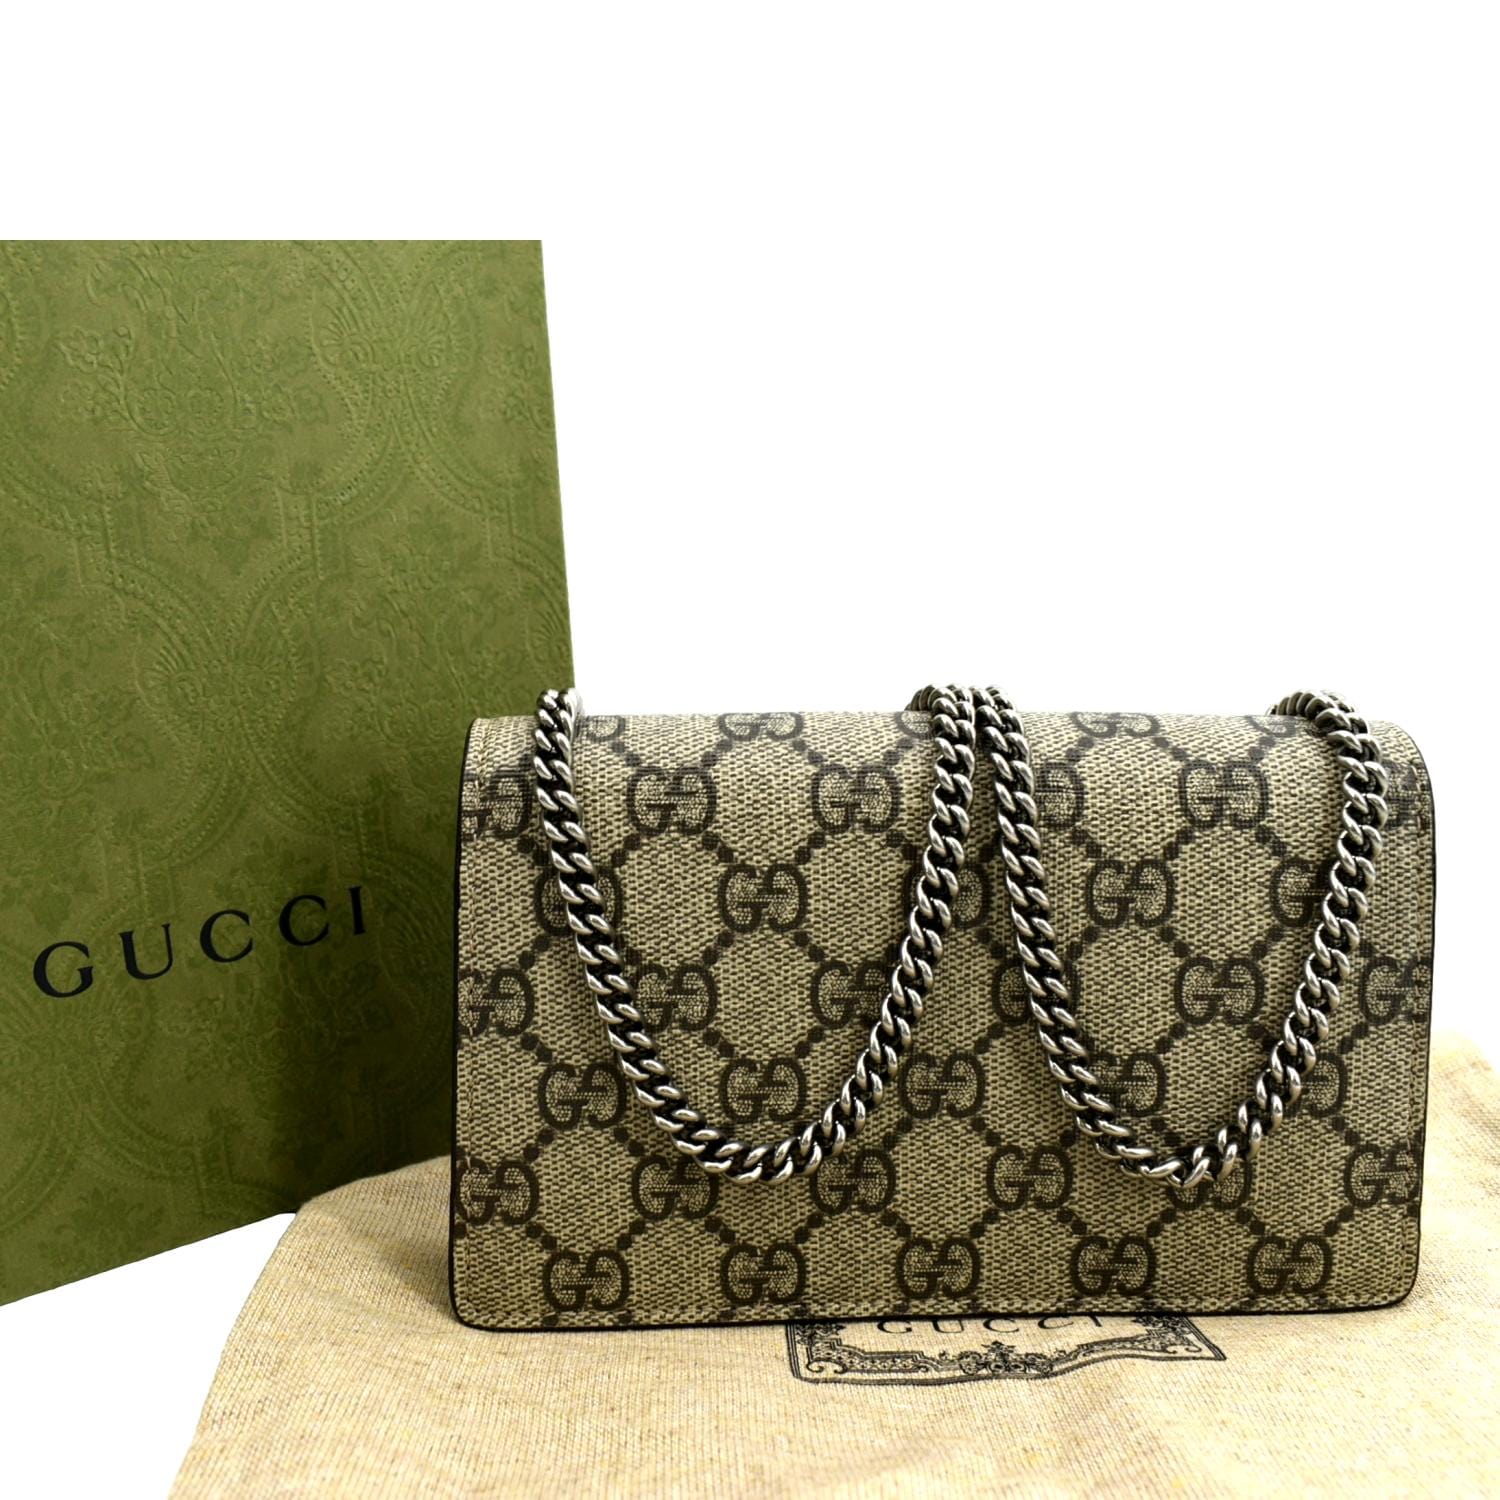 Gucci Dionysus Super Mini Bag in Metallic